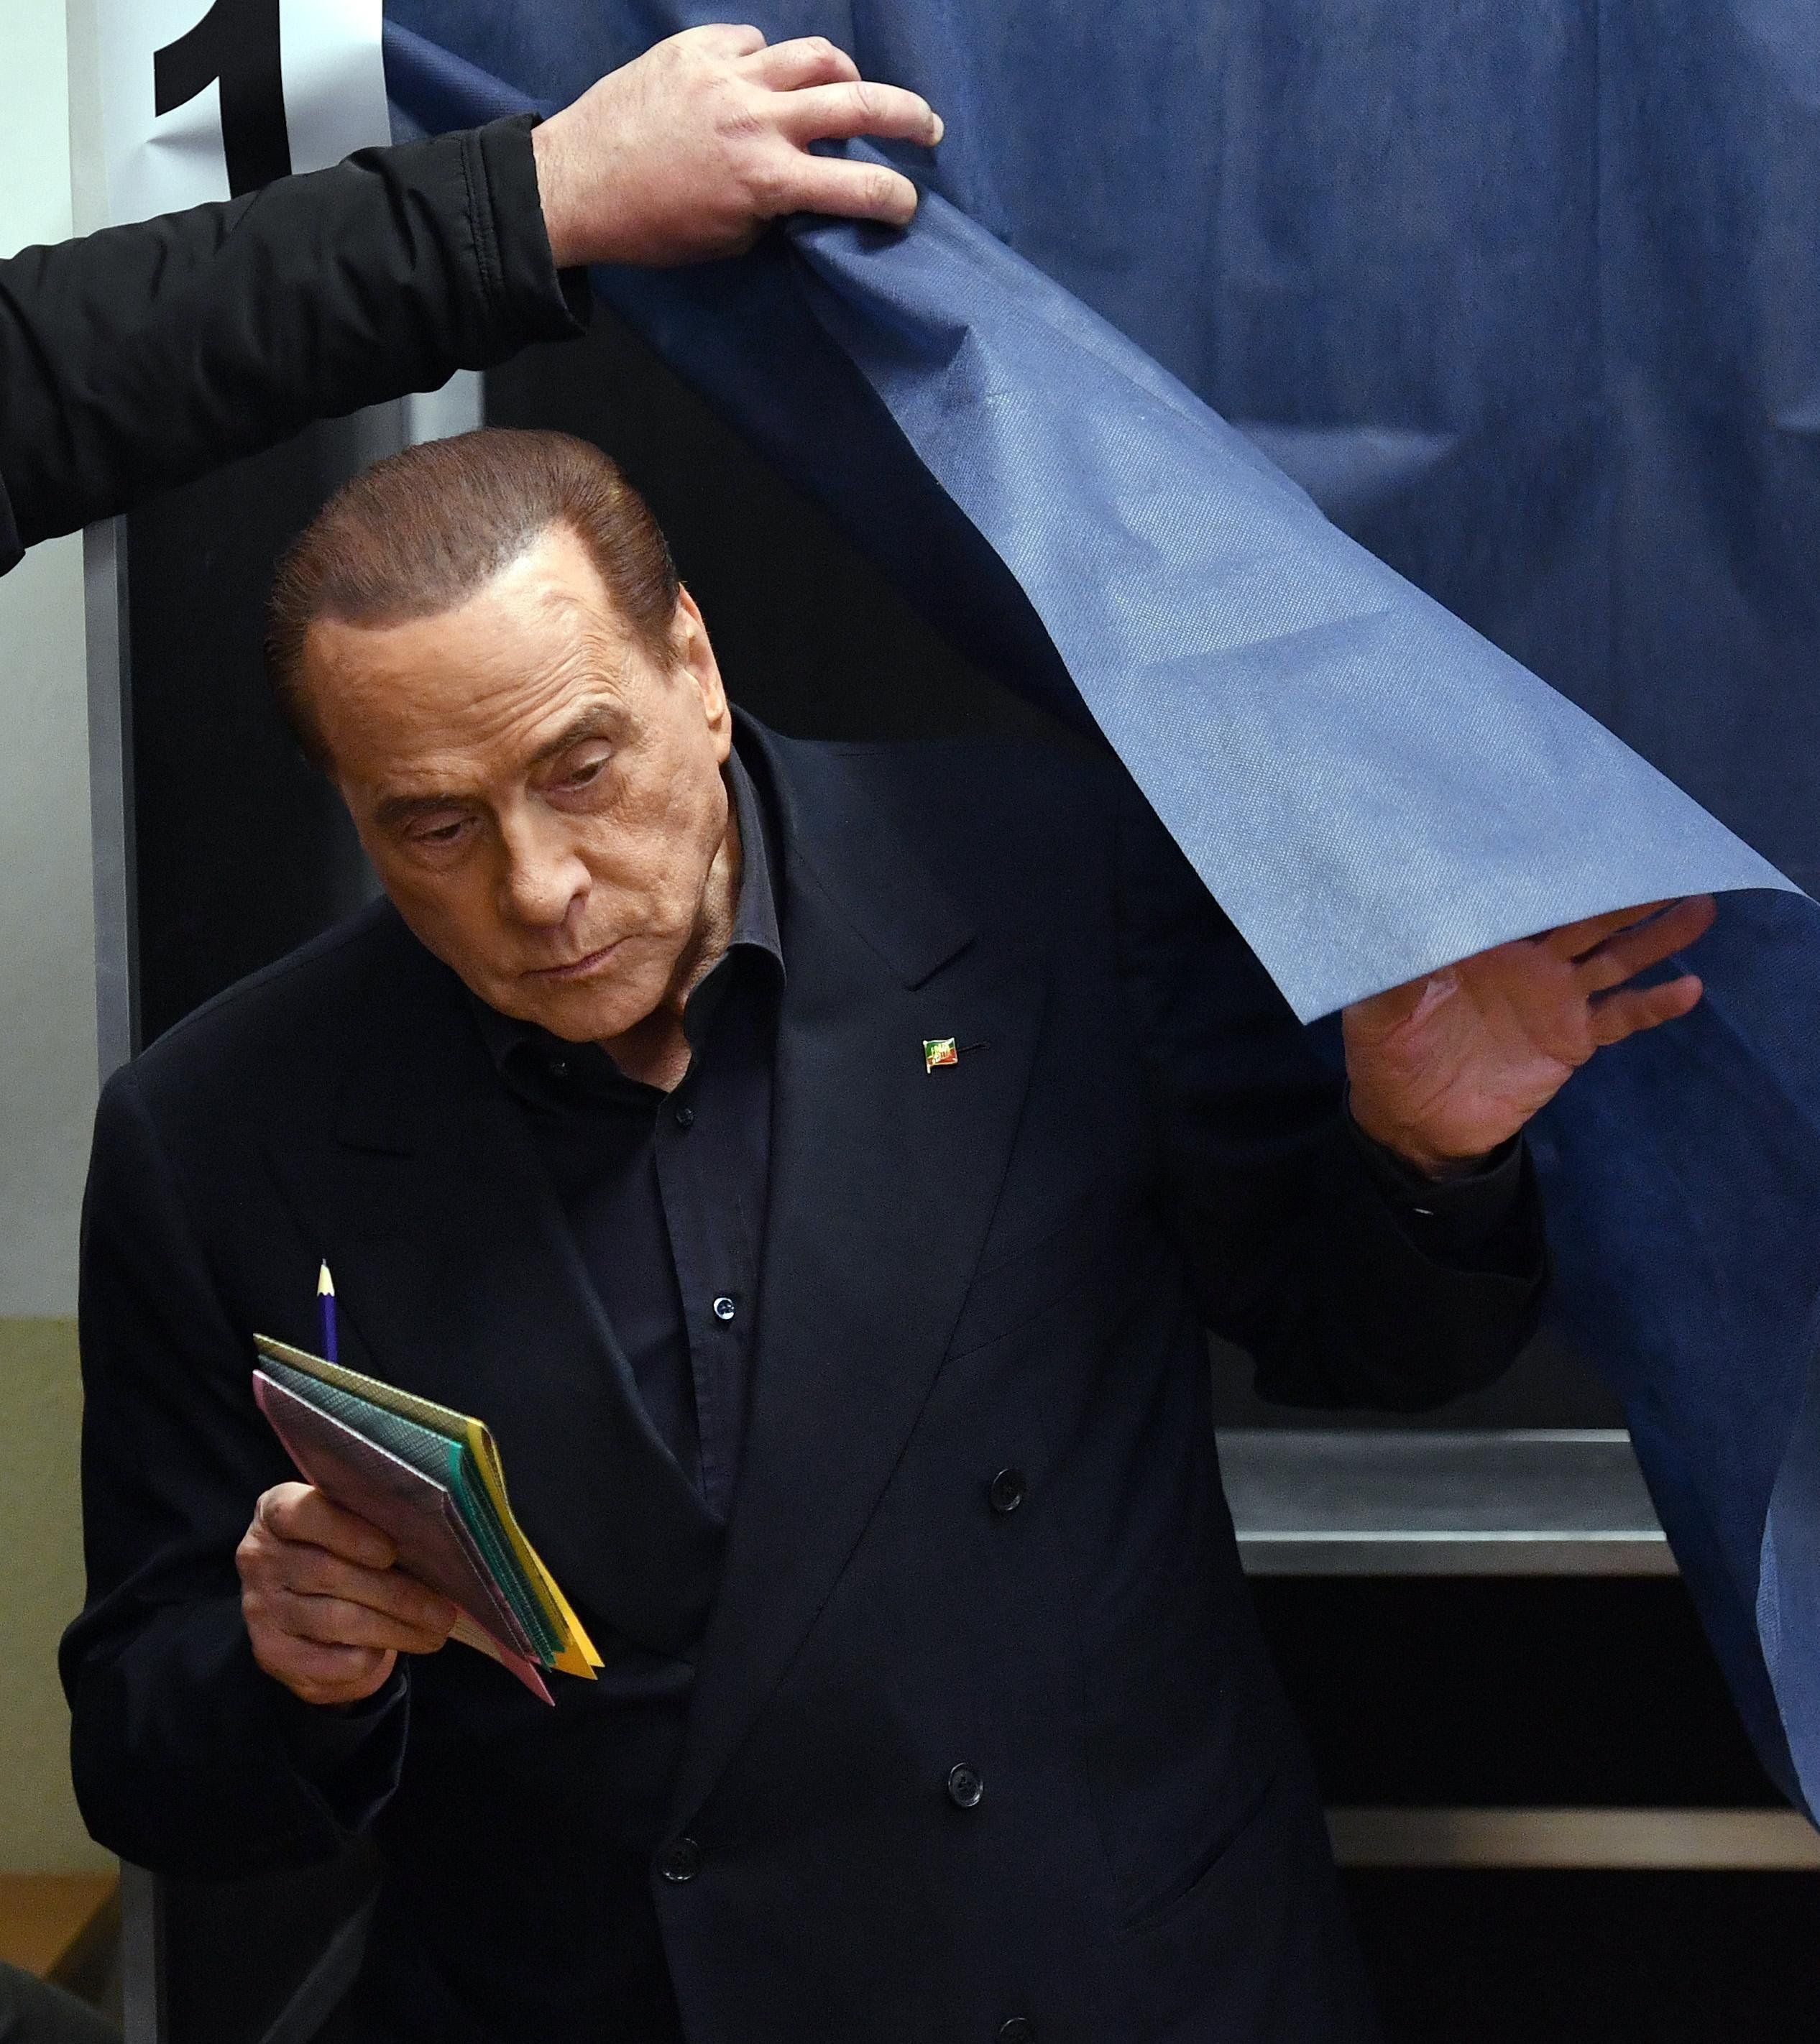 Olasz választások: a szakértő szerint tovább erősödik a jobbközép koalíció